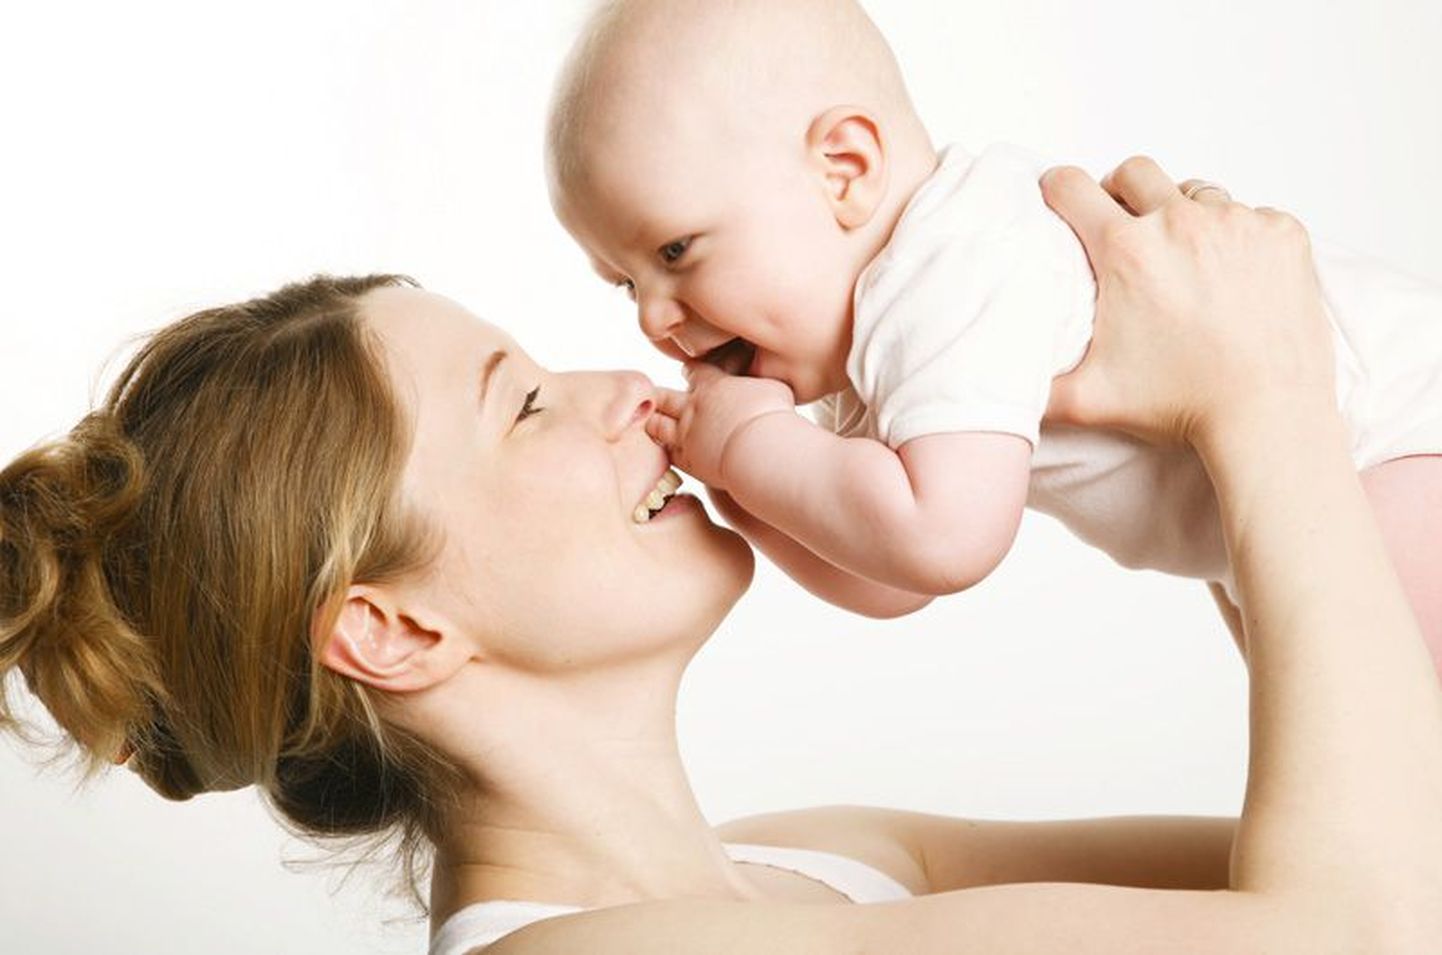 Lapsehoolduspuhkusel olles saab ema pisikesele täisväärtuslikku elu algust pakkuda.